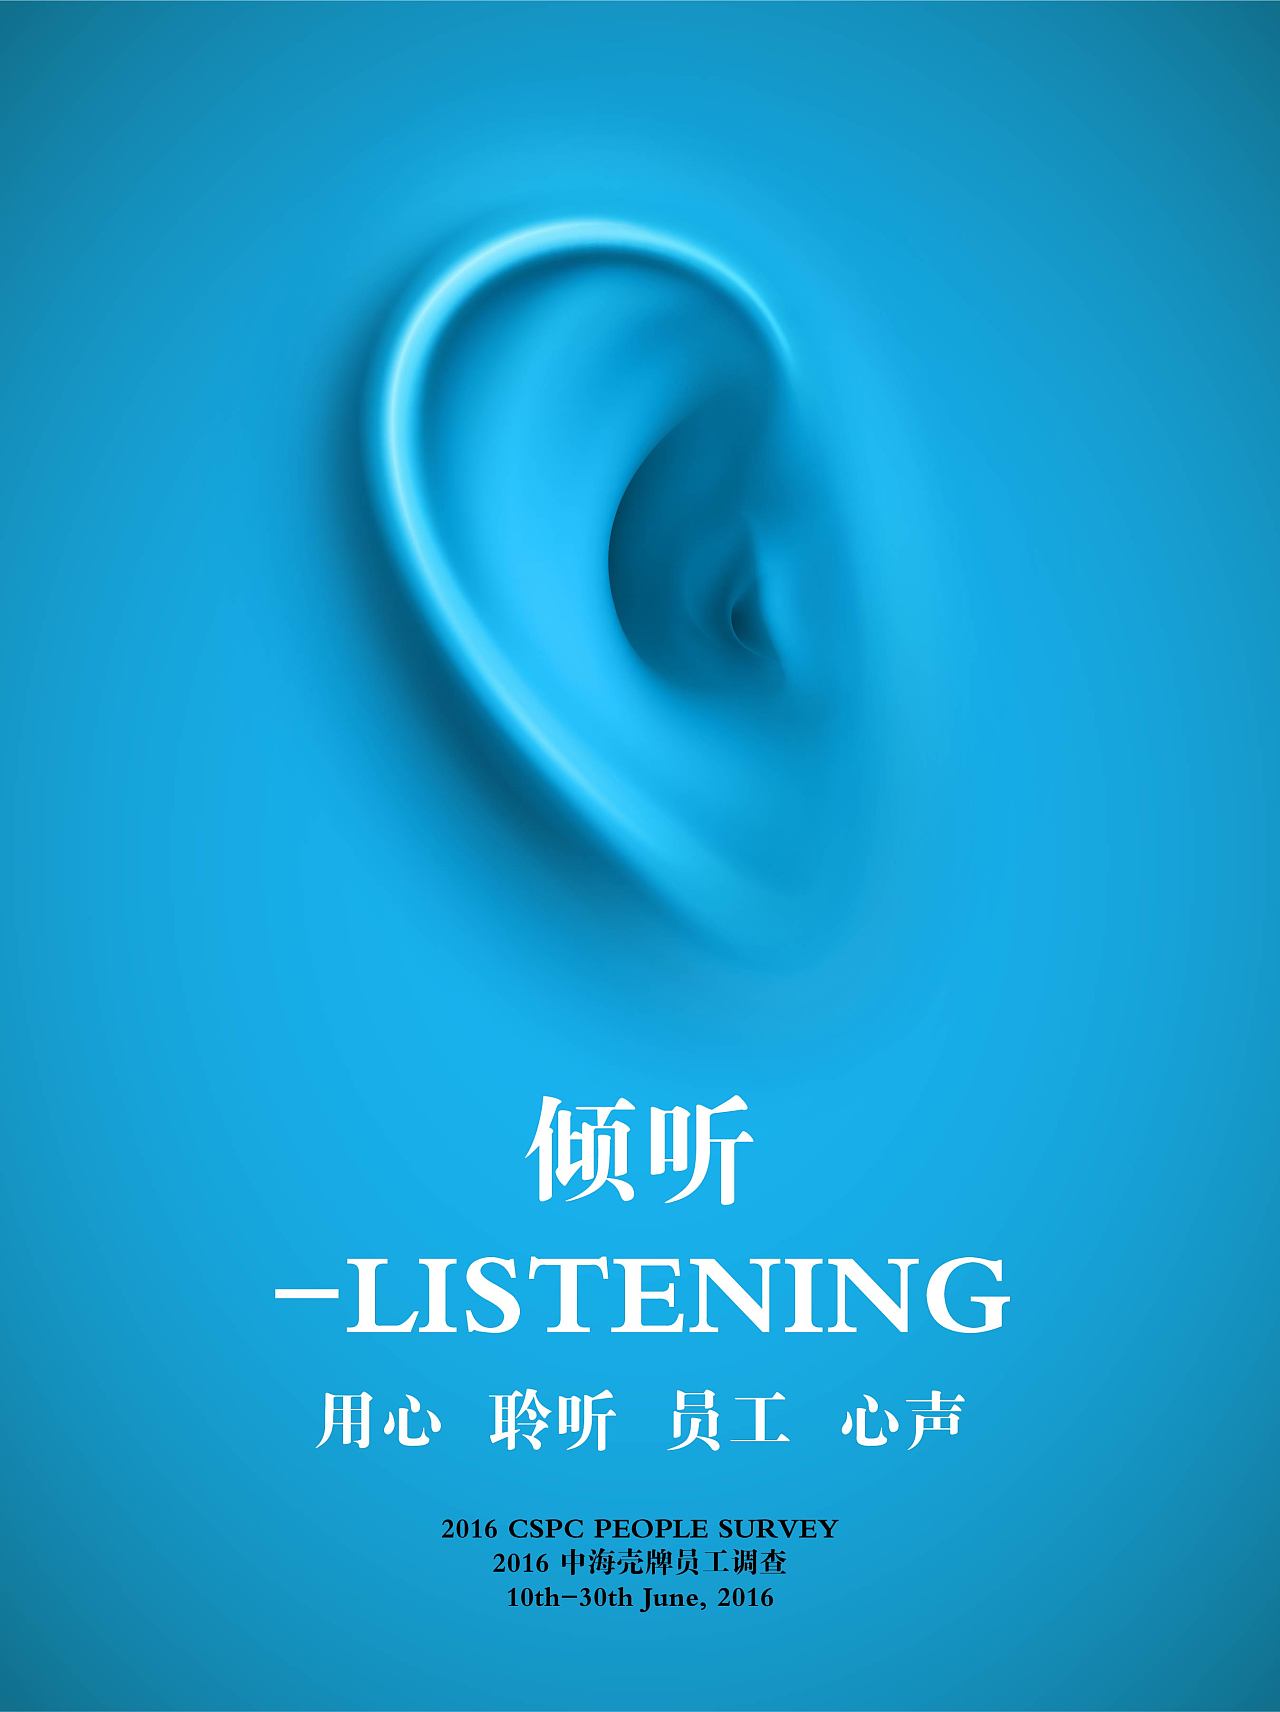 倾听listening – 用心 聆听 员工 心声